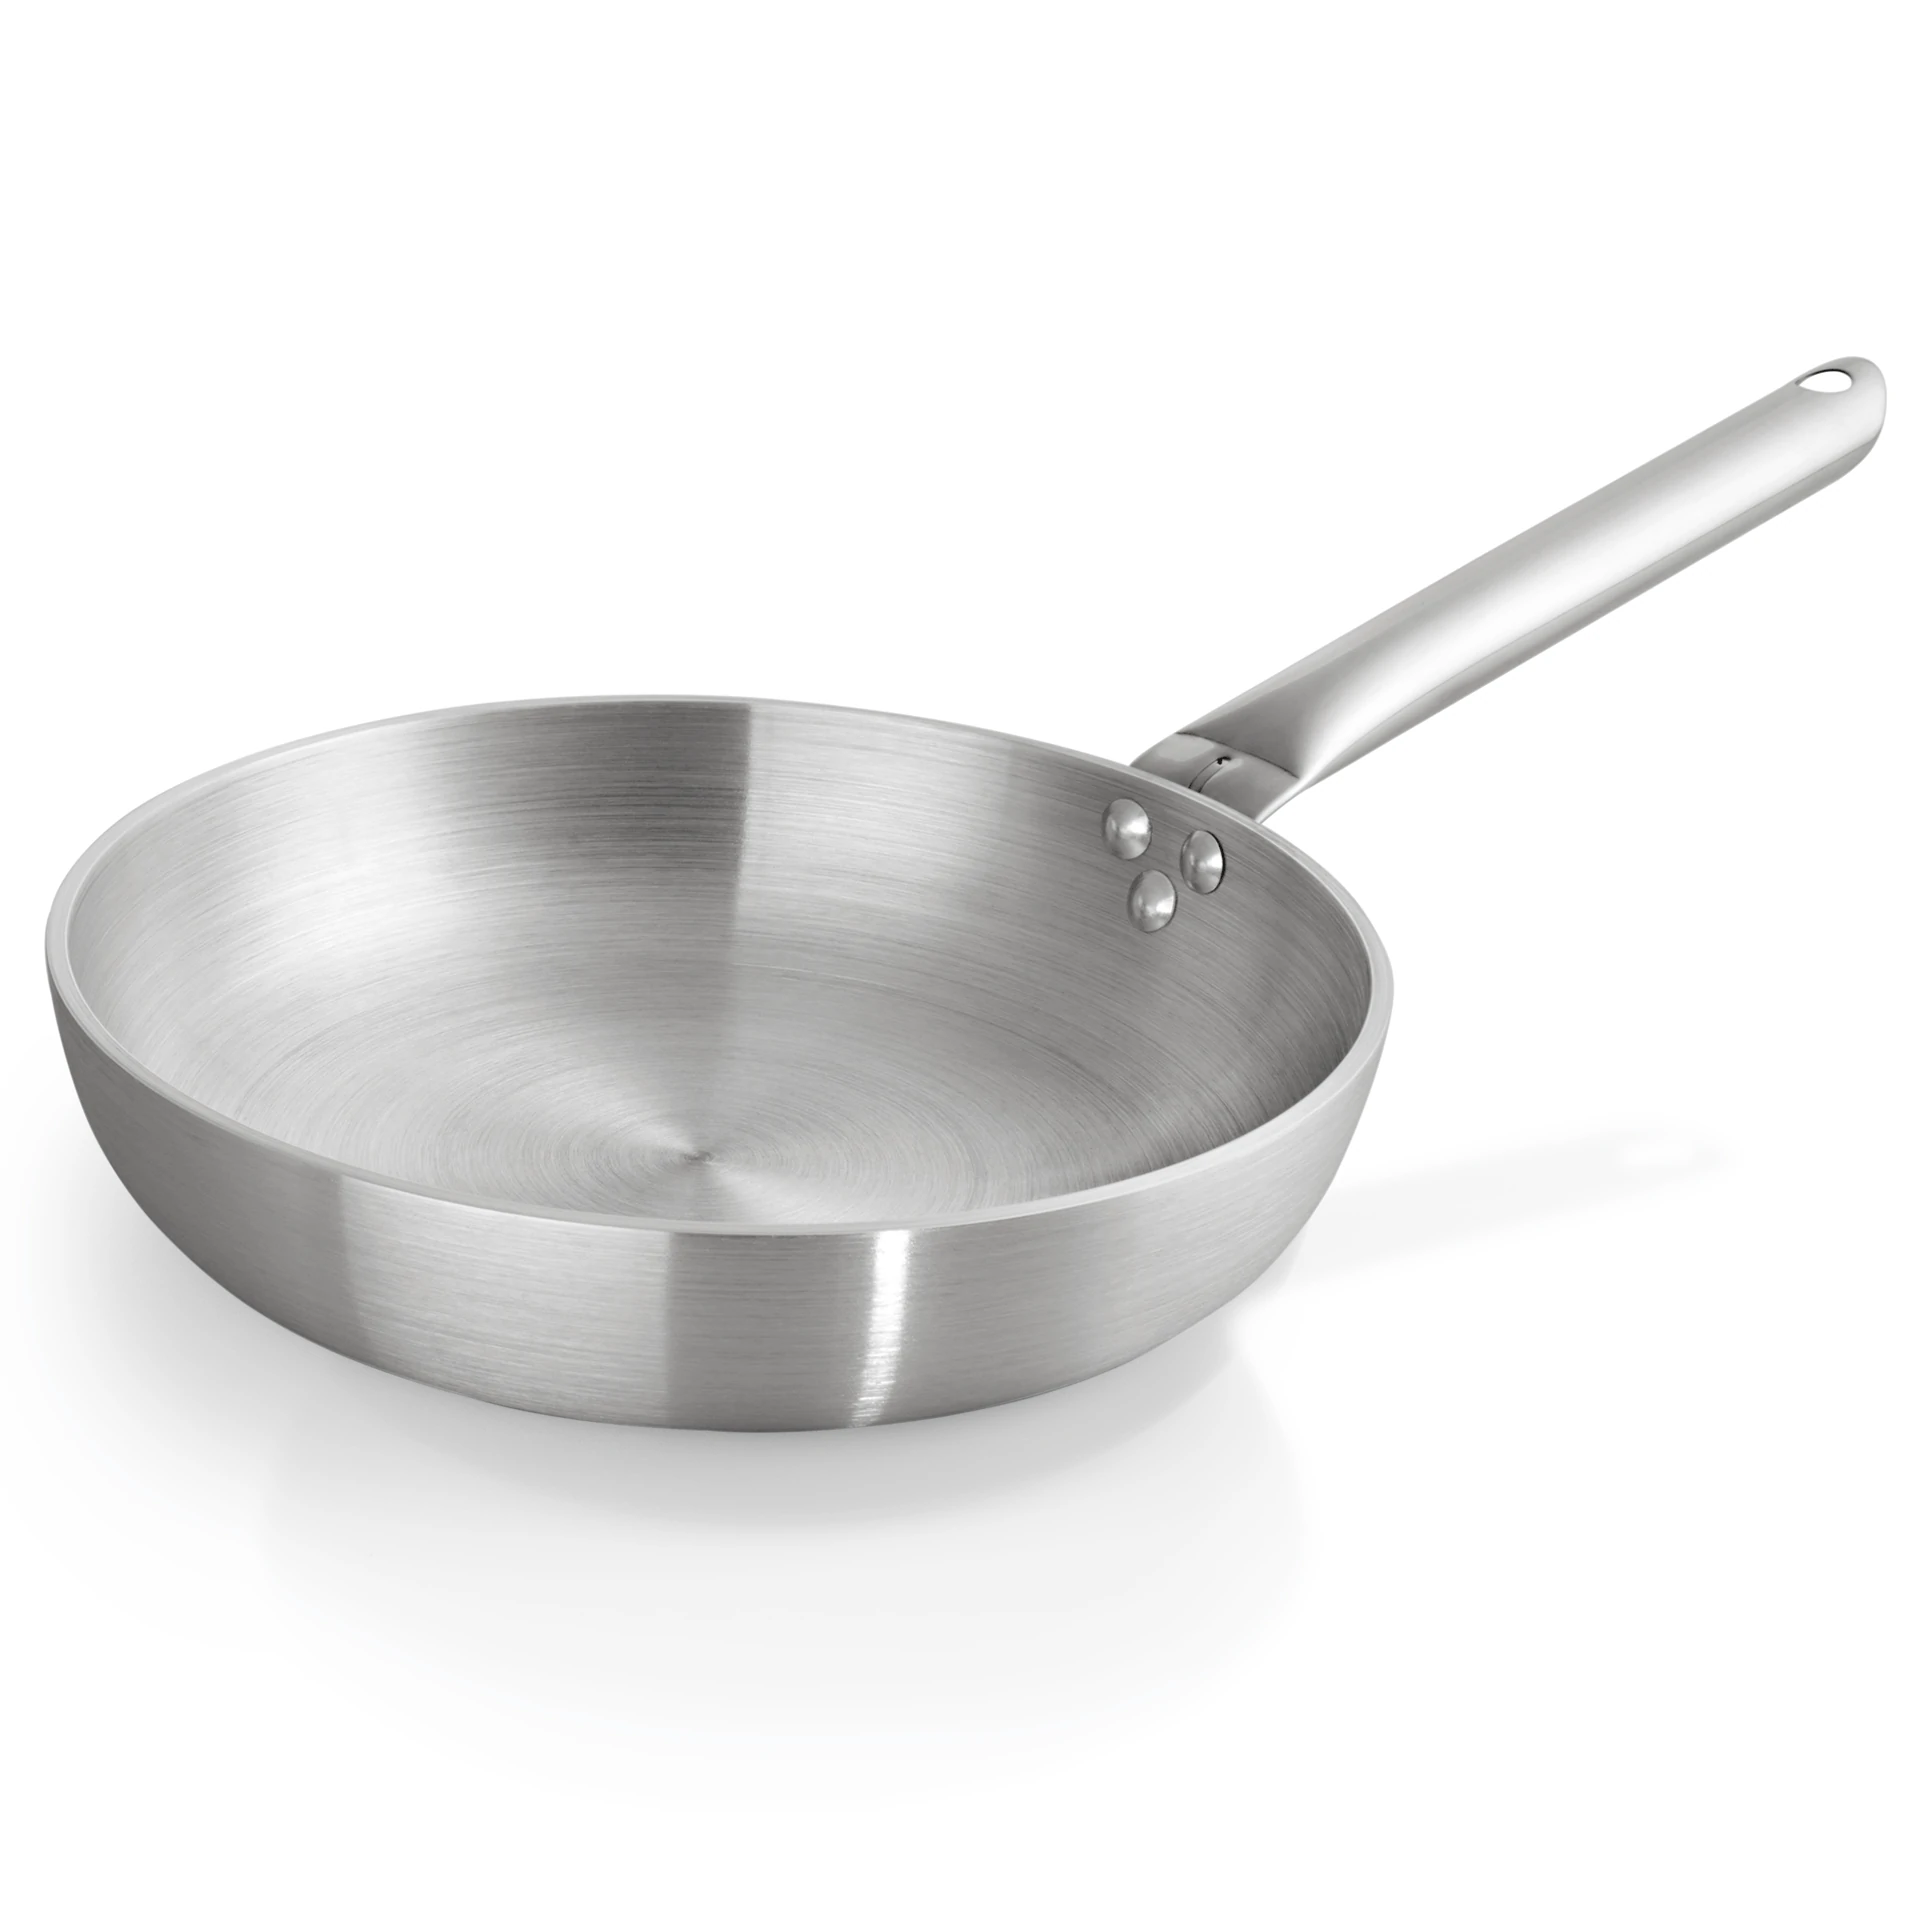 Frying pan